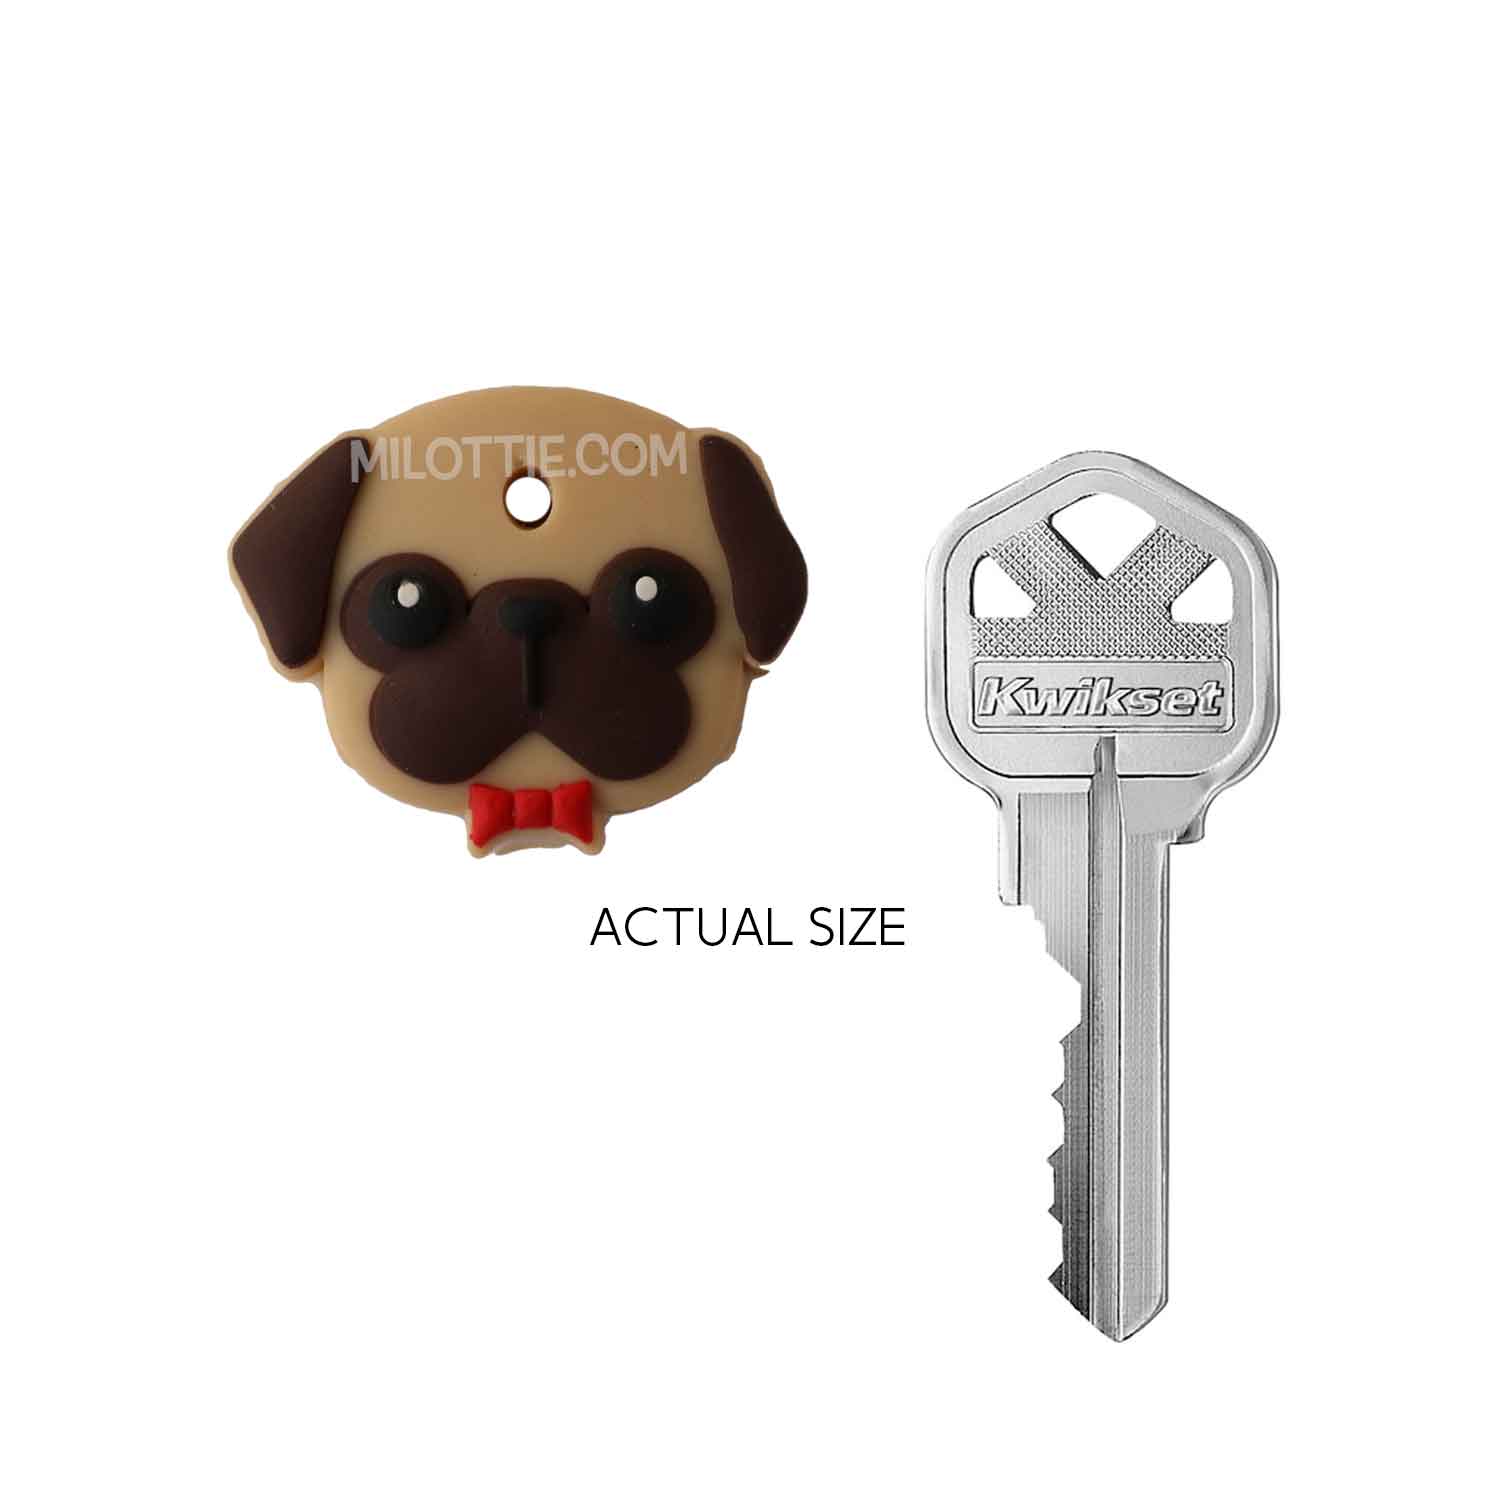 bull dog key cover - milottie